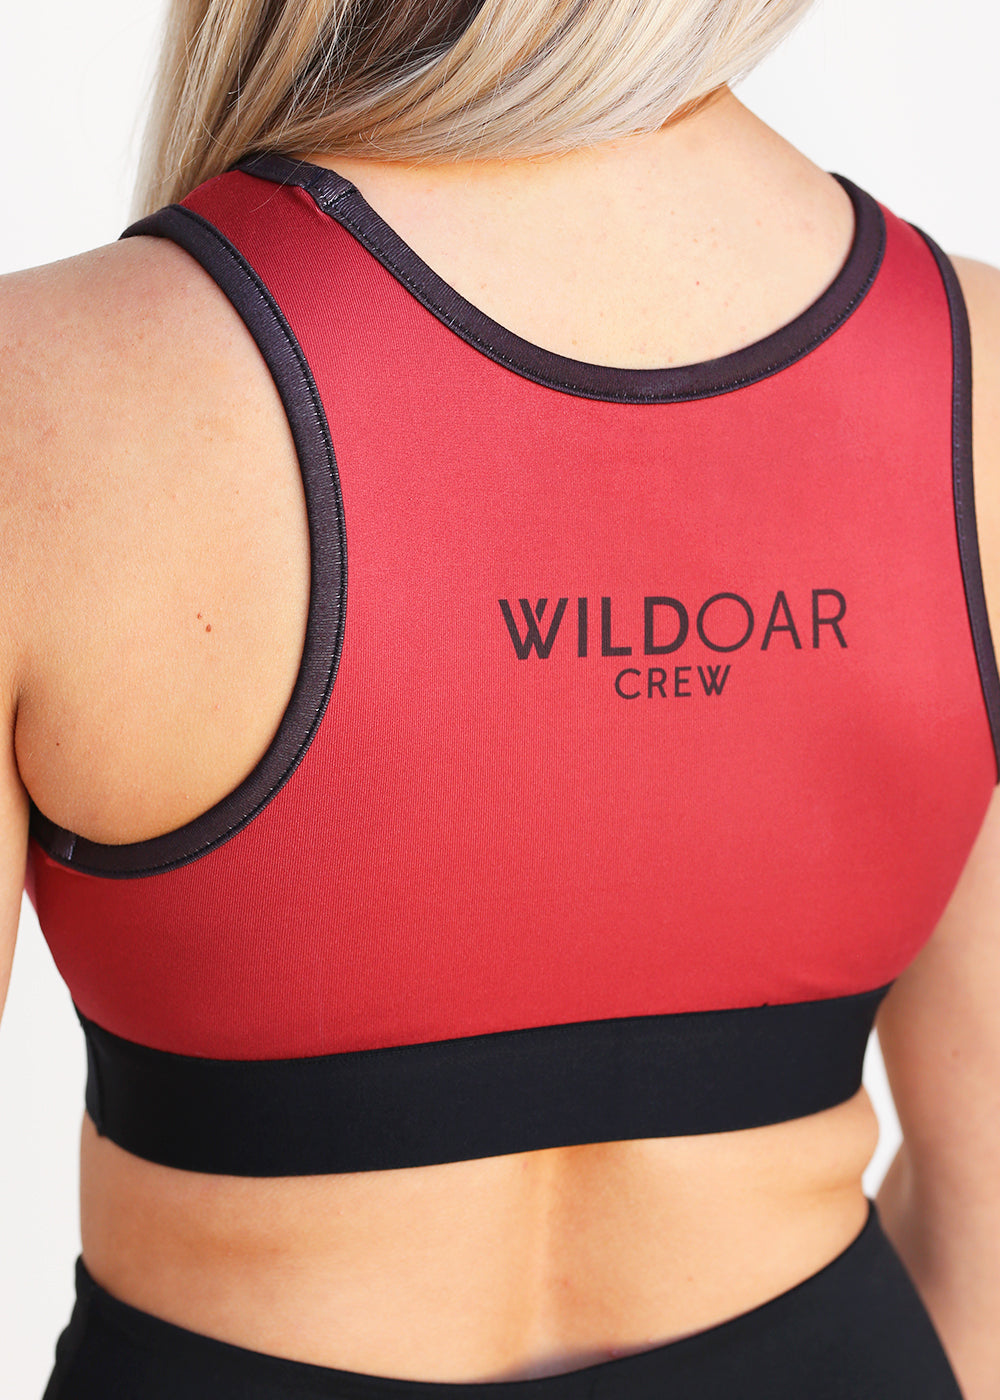 Wild Oar Women's Reflective Logo Sports Bra - JLAthletics